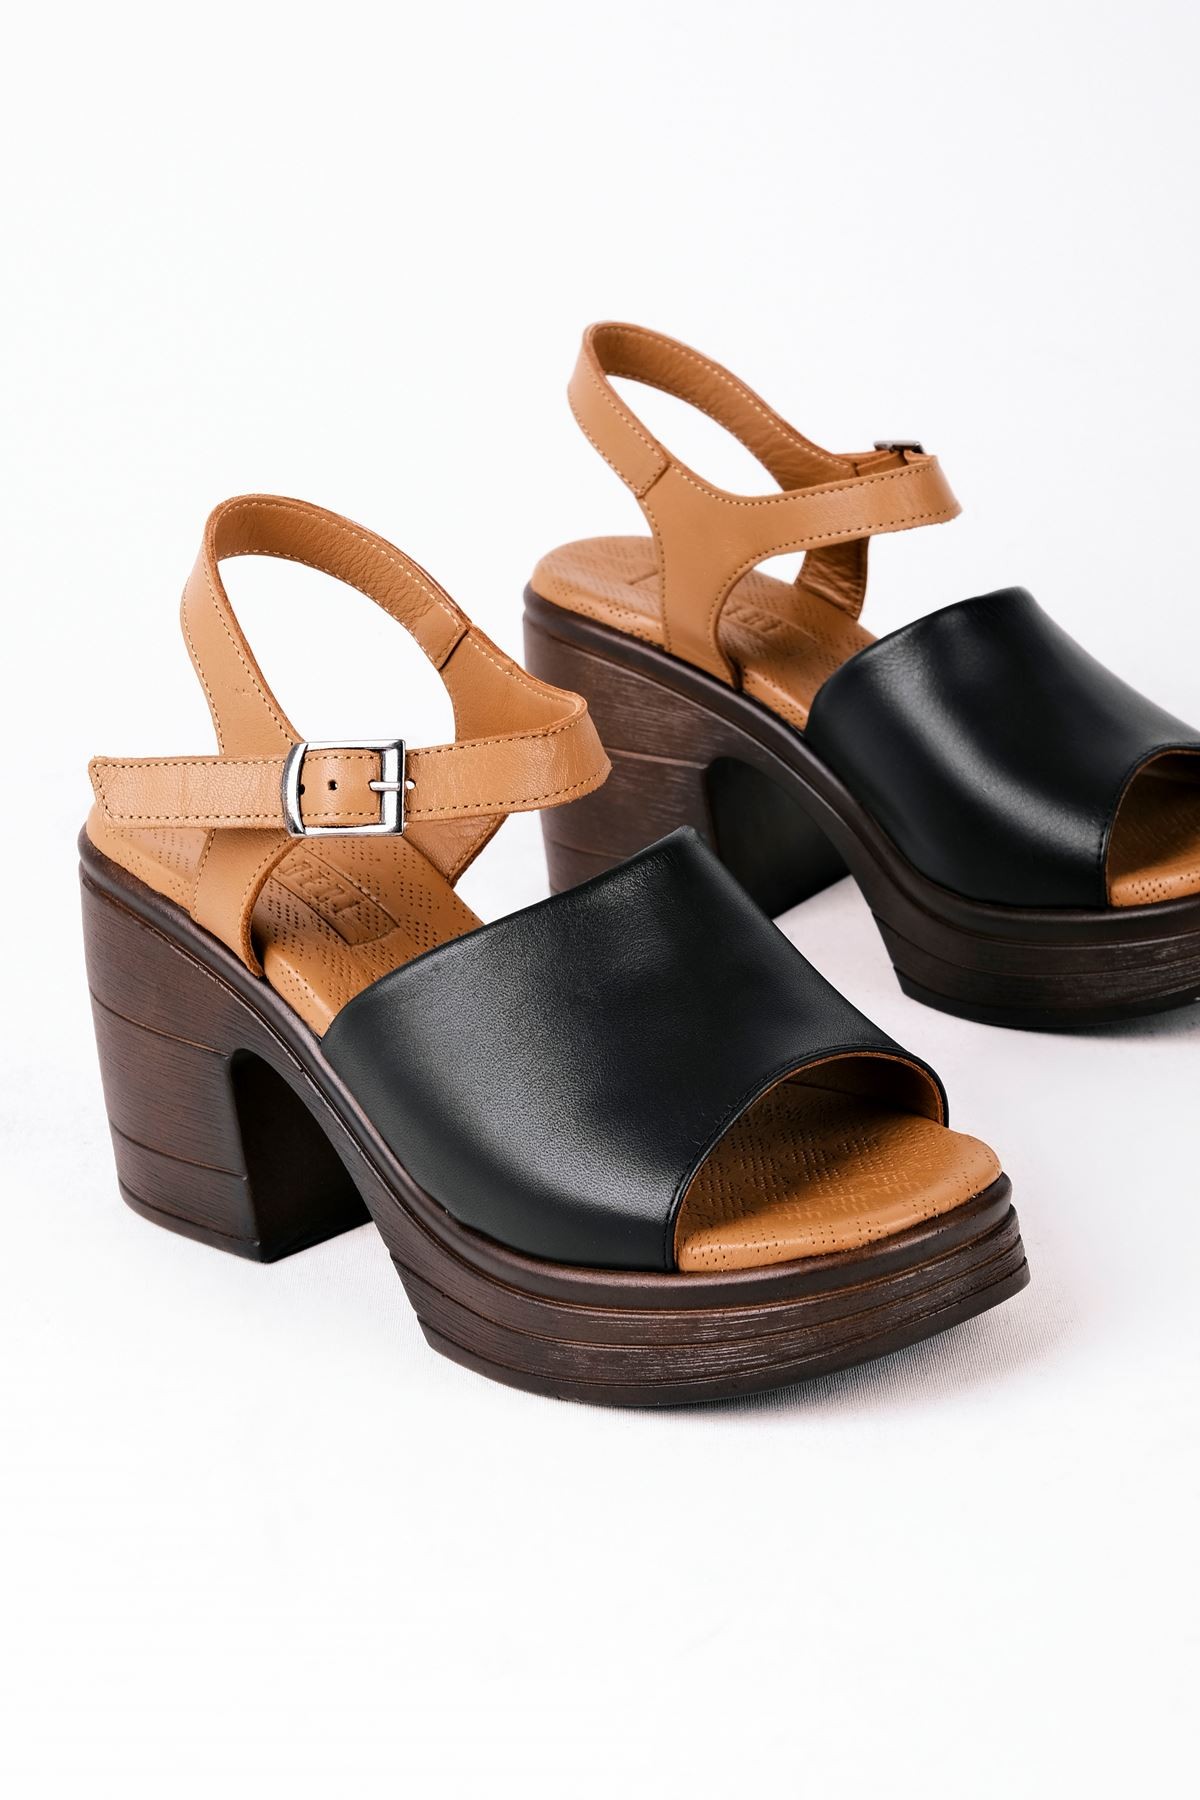 Raggy Kadın Hakiki Deri Tek Bantlı Topuklu Sandalet (B3116) - Siyah